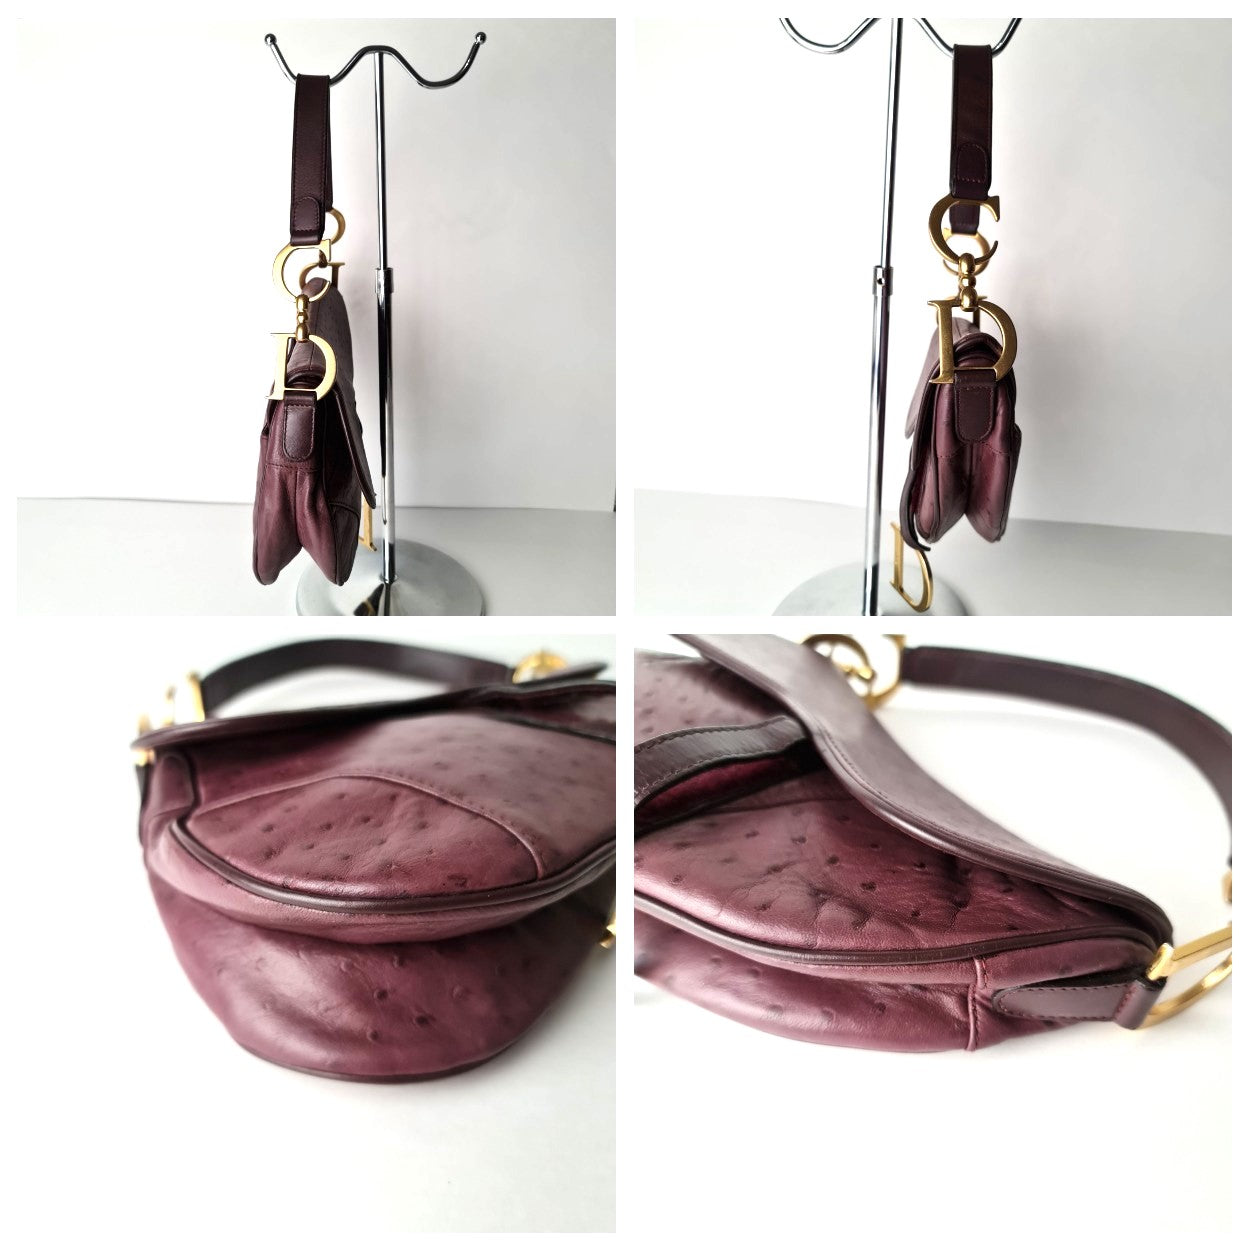 Dior Christian Dior Violet Ostrich Leather Shoulder Bag (749) LVBagaholic